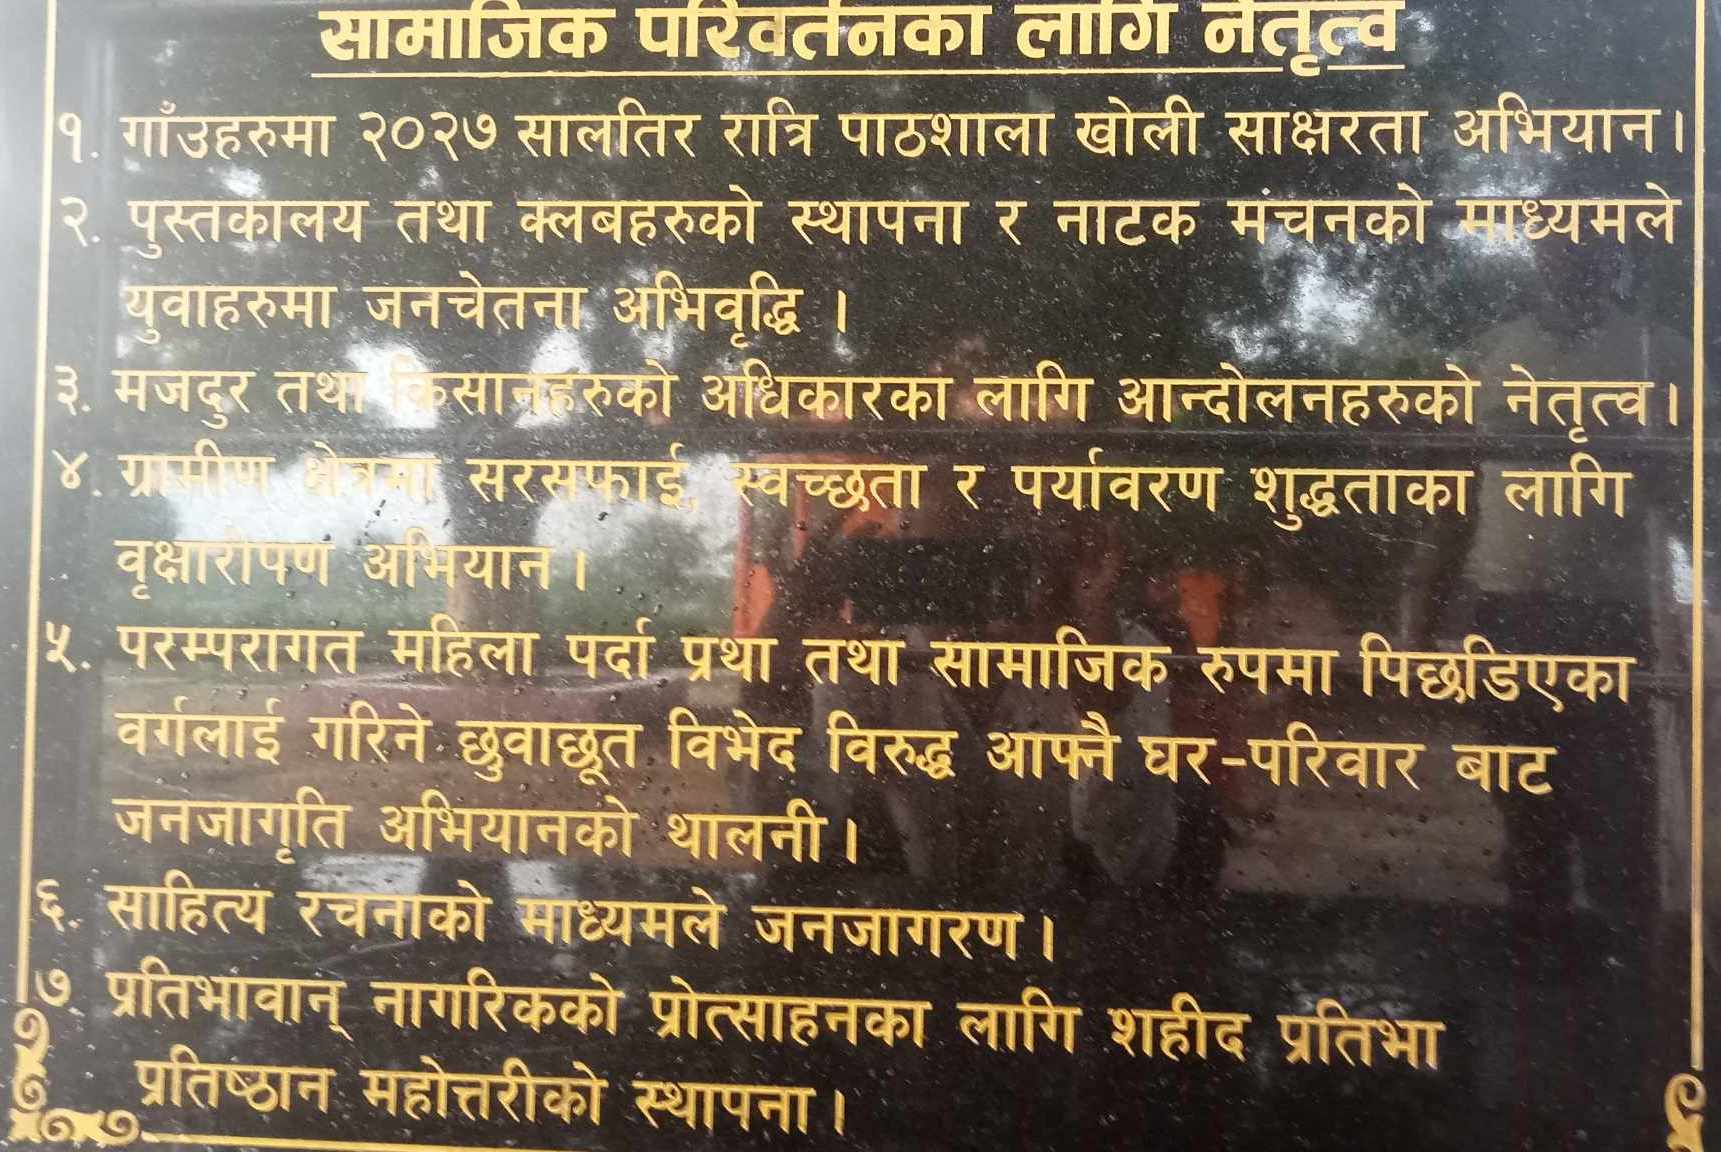 Shalik Muni Sametieko Ganesh Nepali Ko Parichay-21690345920.jpg